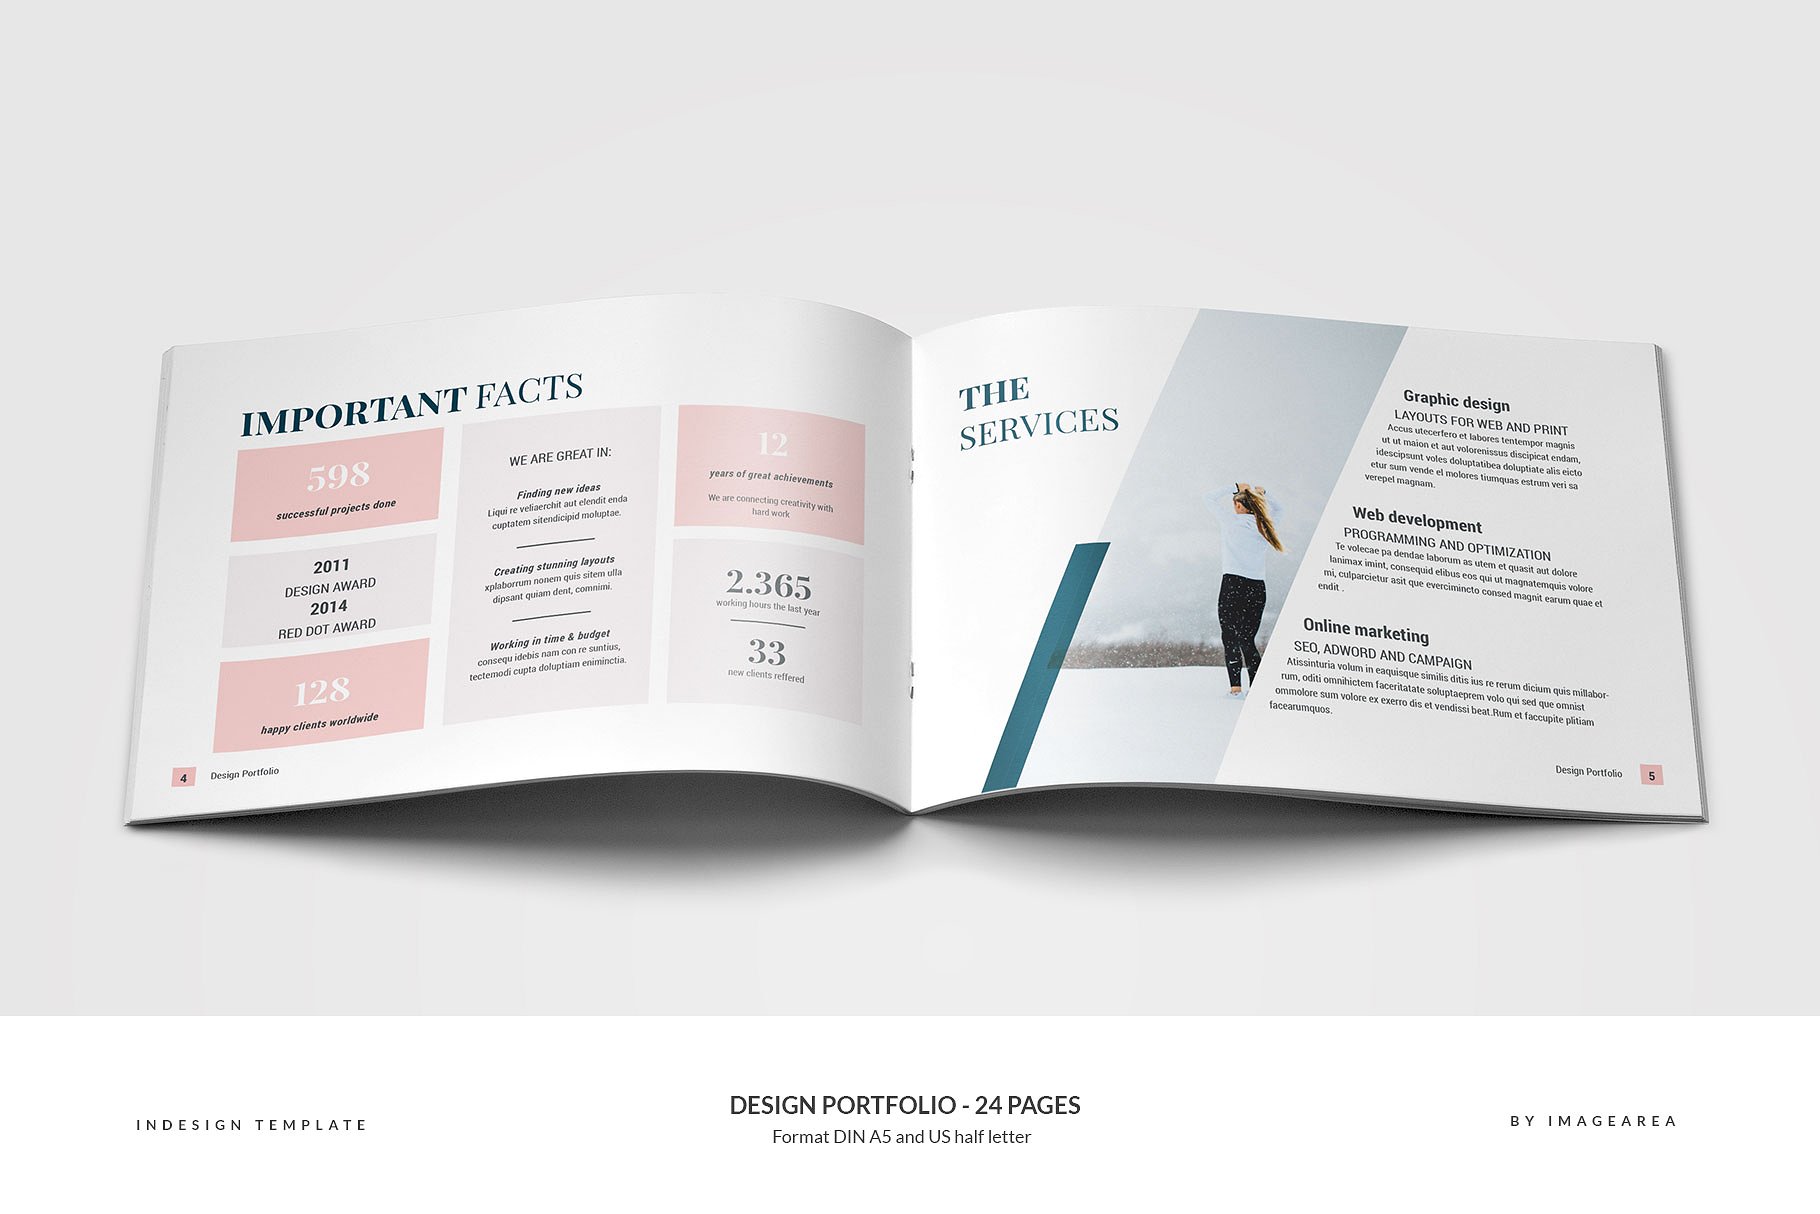 时尚简约企业画册模板 Design Portfolio – 24 Pages插图(2)